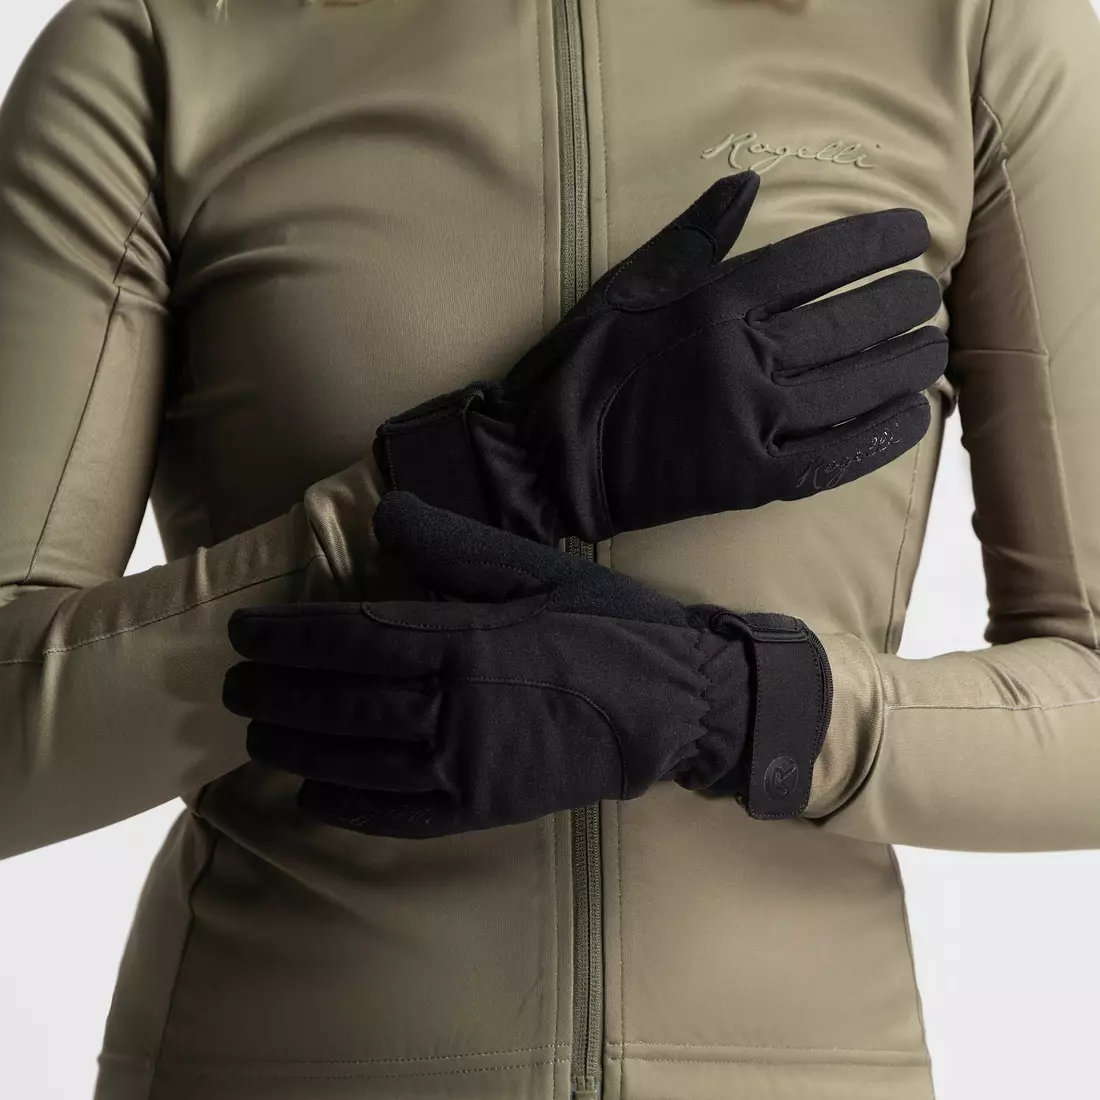 Rogelli dámské zimní cyklistické rukavice CORE II, černé